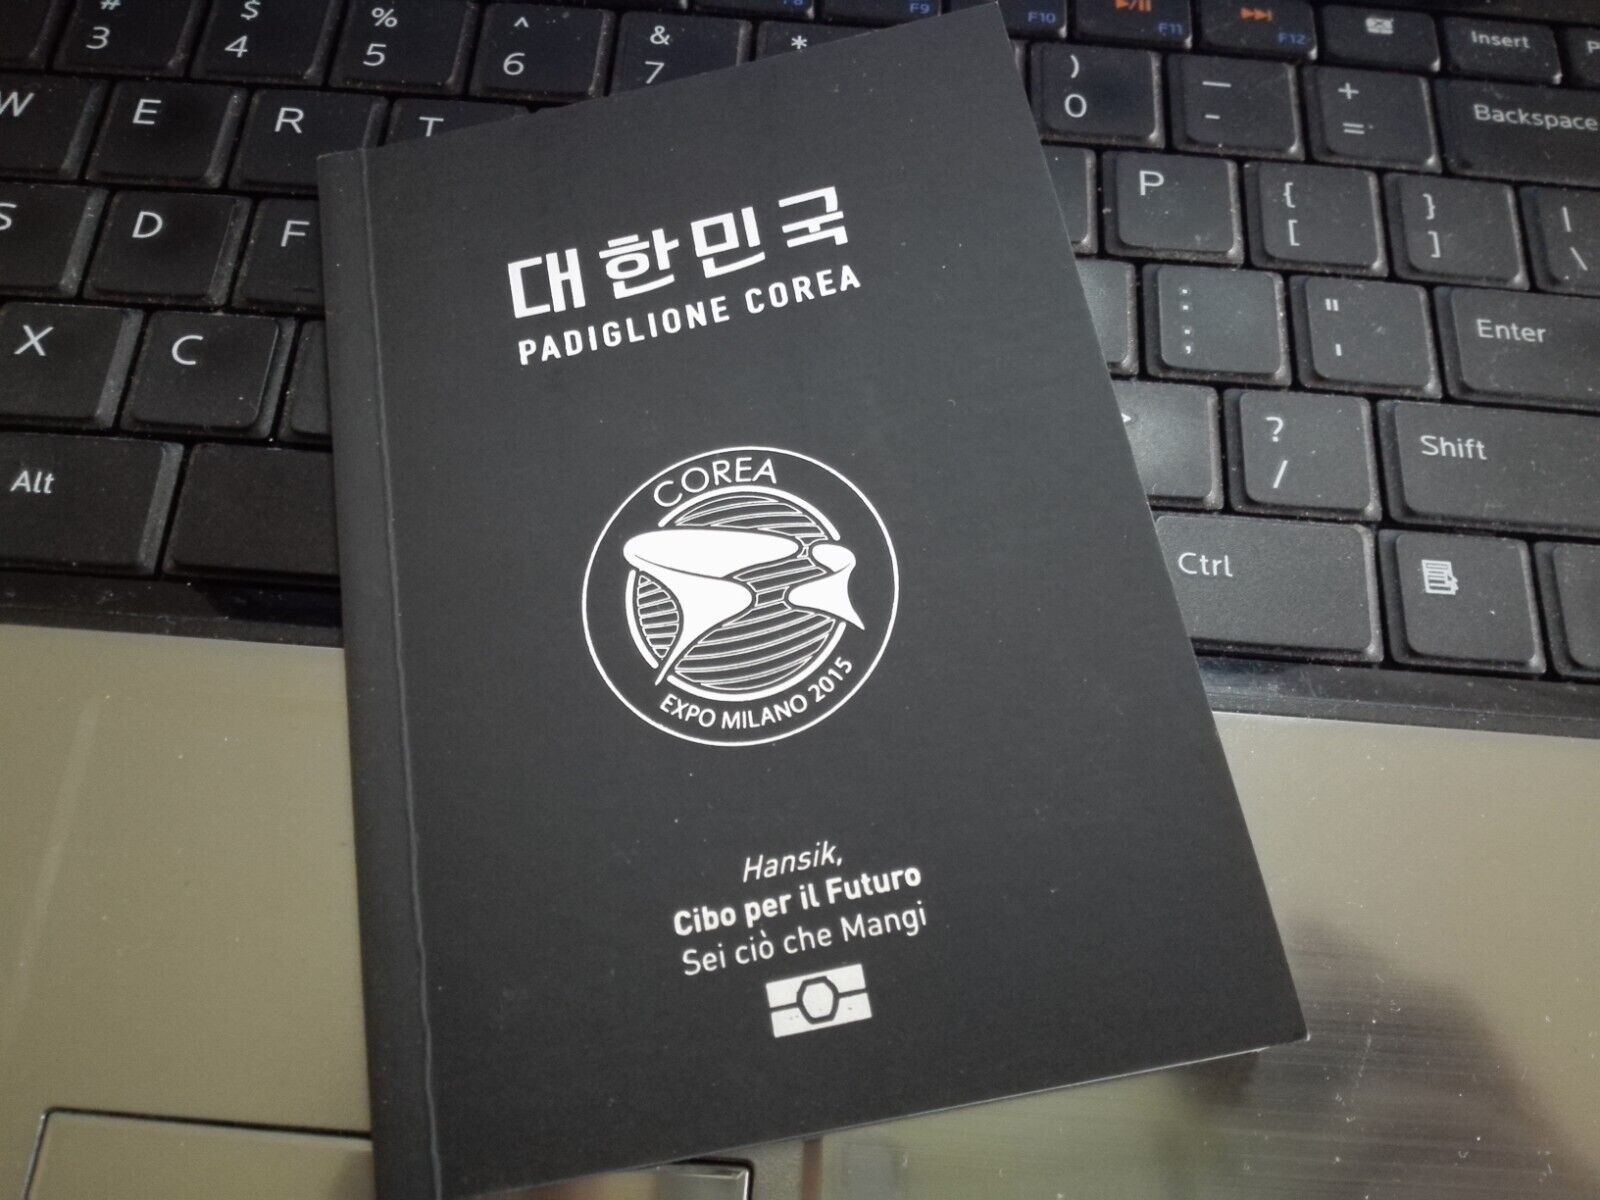 2015 MILANO MILAN EXPO KOREA PAVILION SEALED PASSPORT WITH 4 SEALS